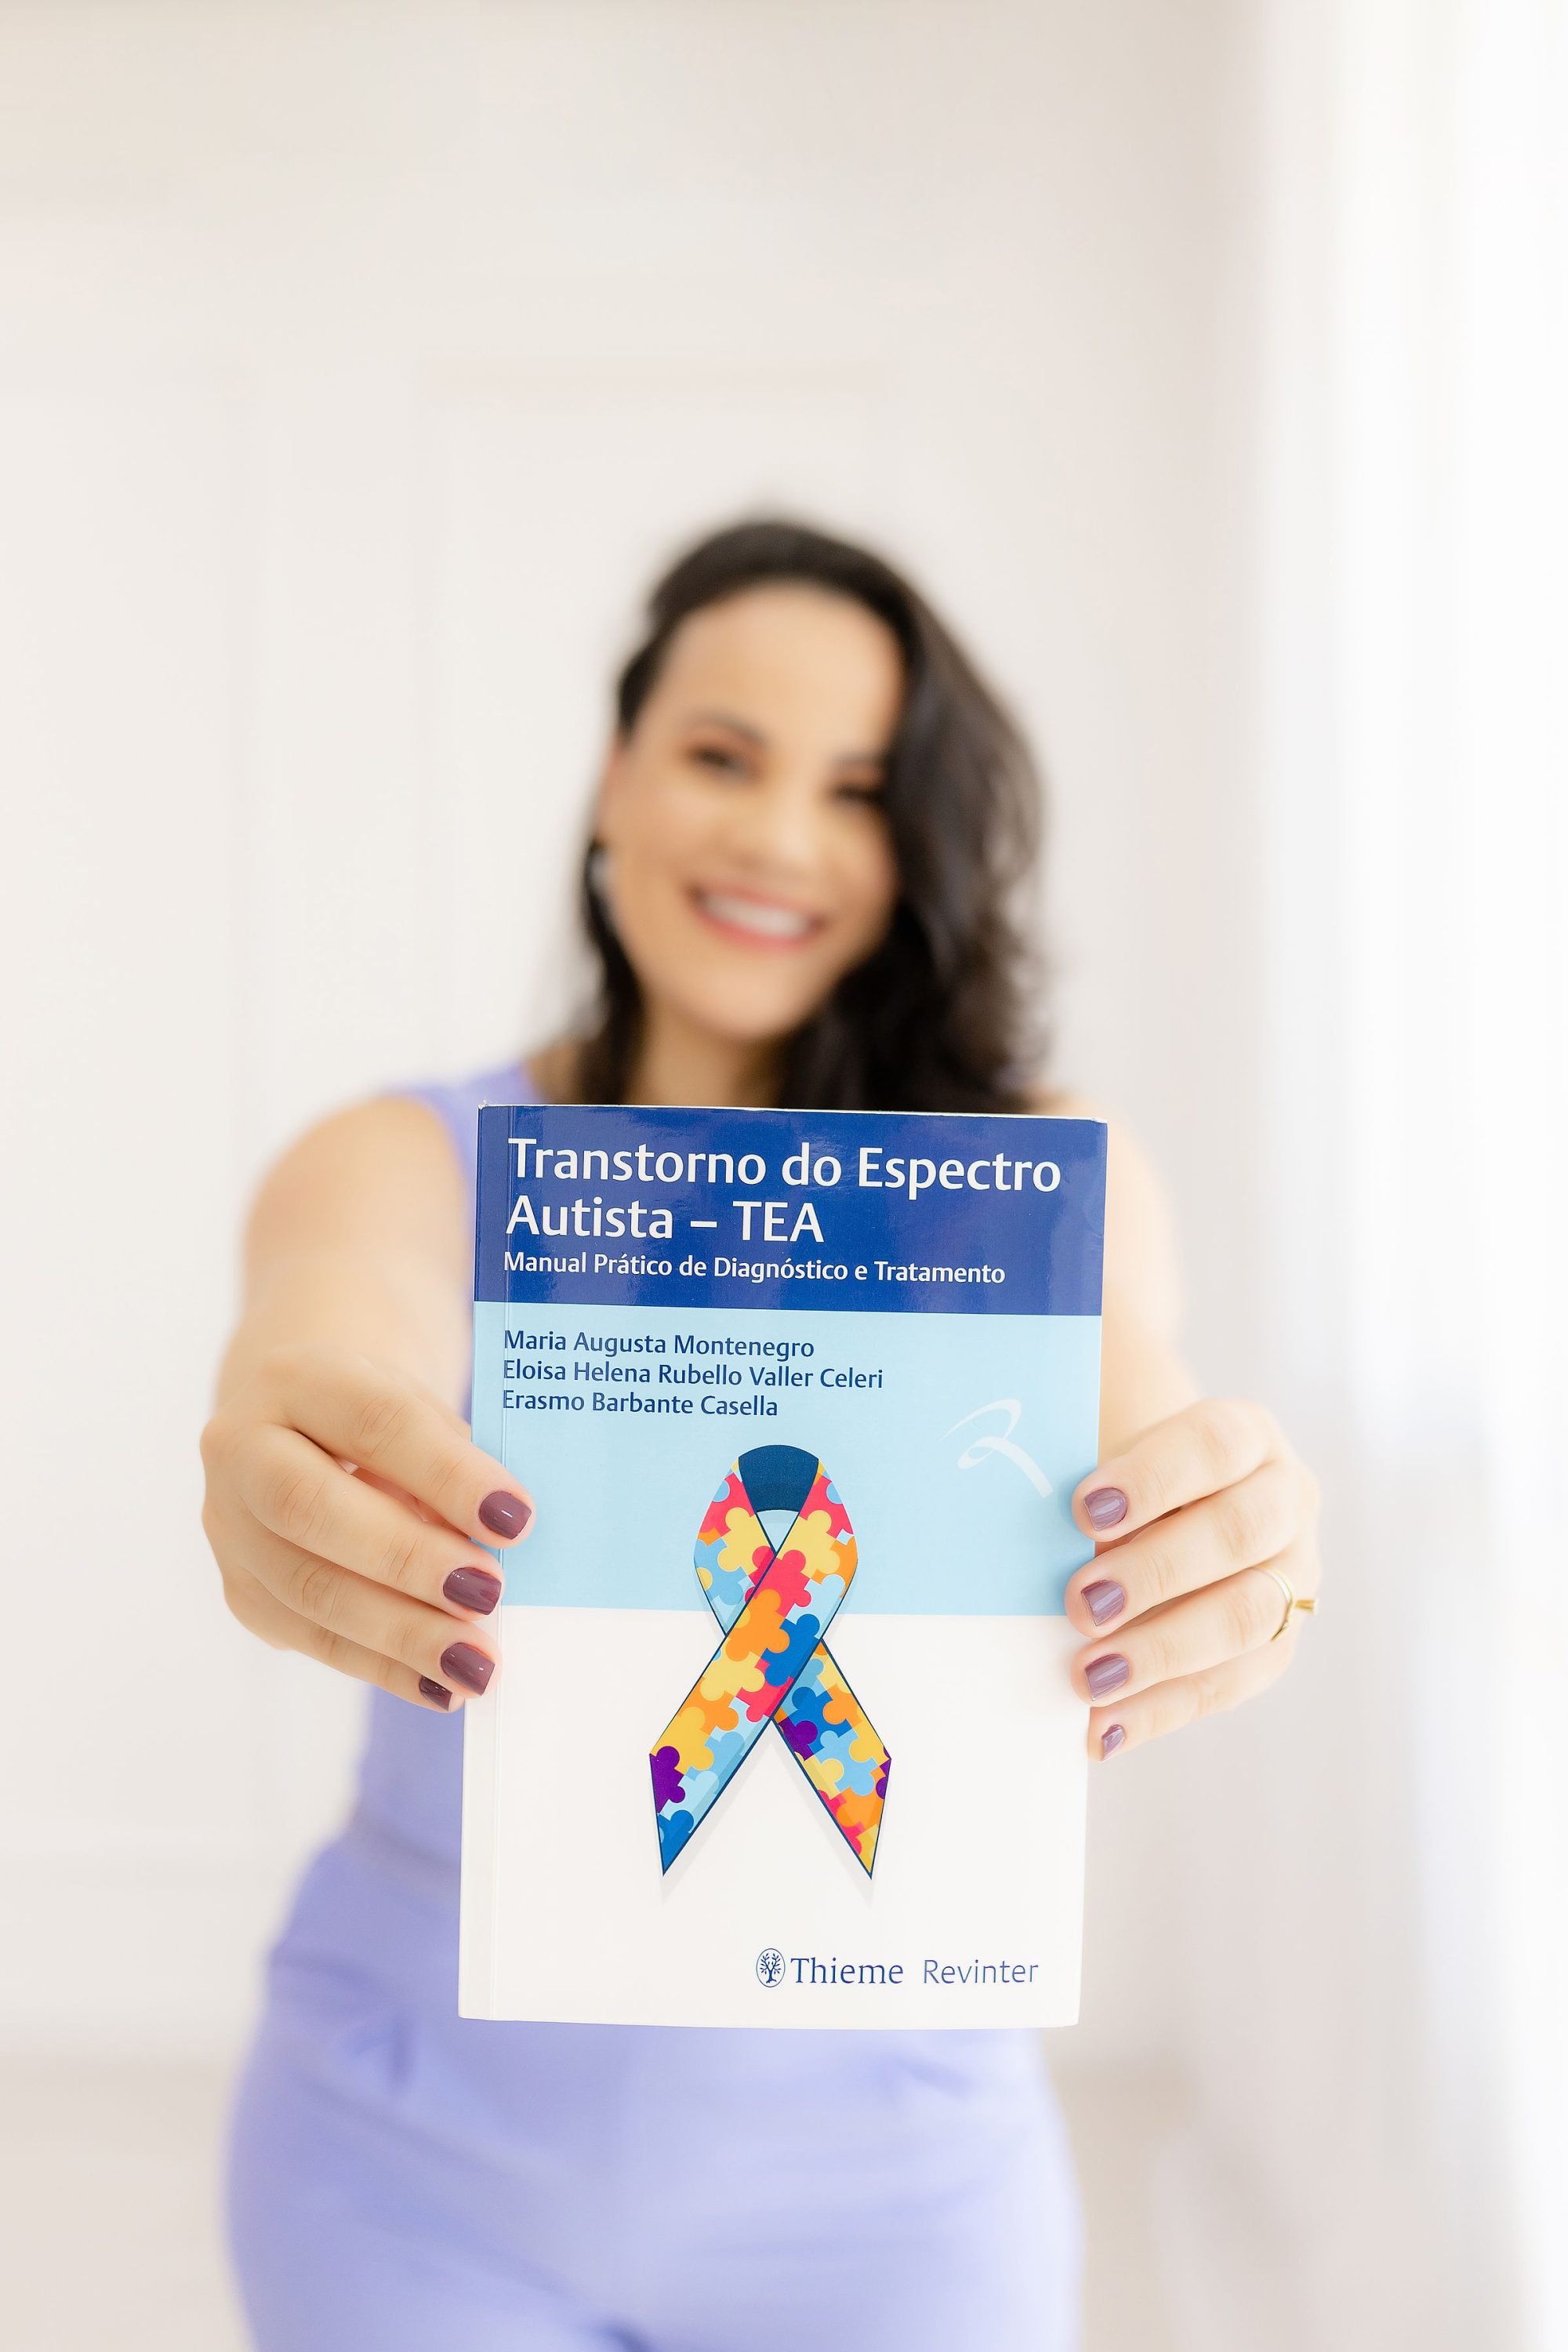 Brasil recebe primeira edição da ExpoTEA, uma feira dedicada exclusivamente ao autismo